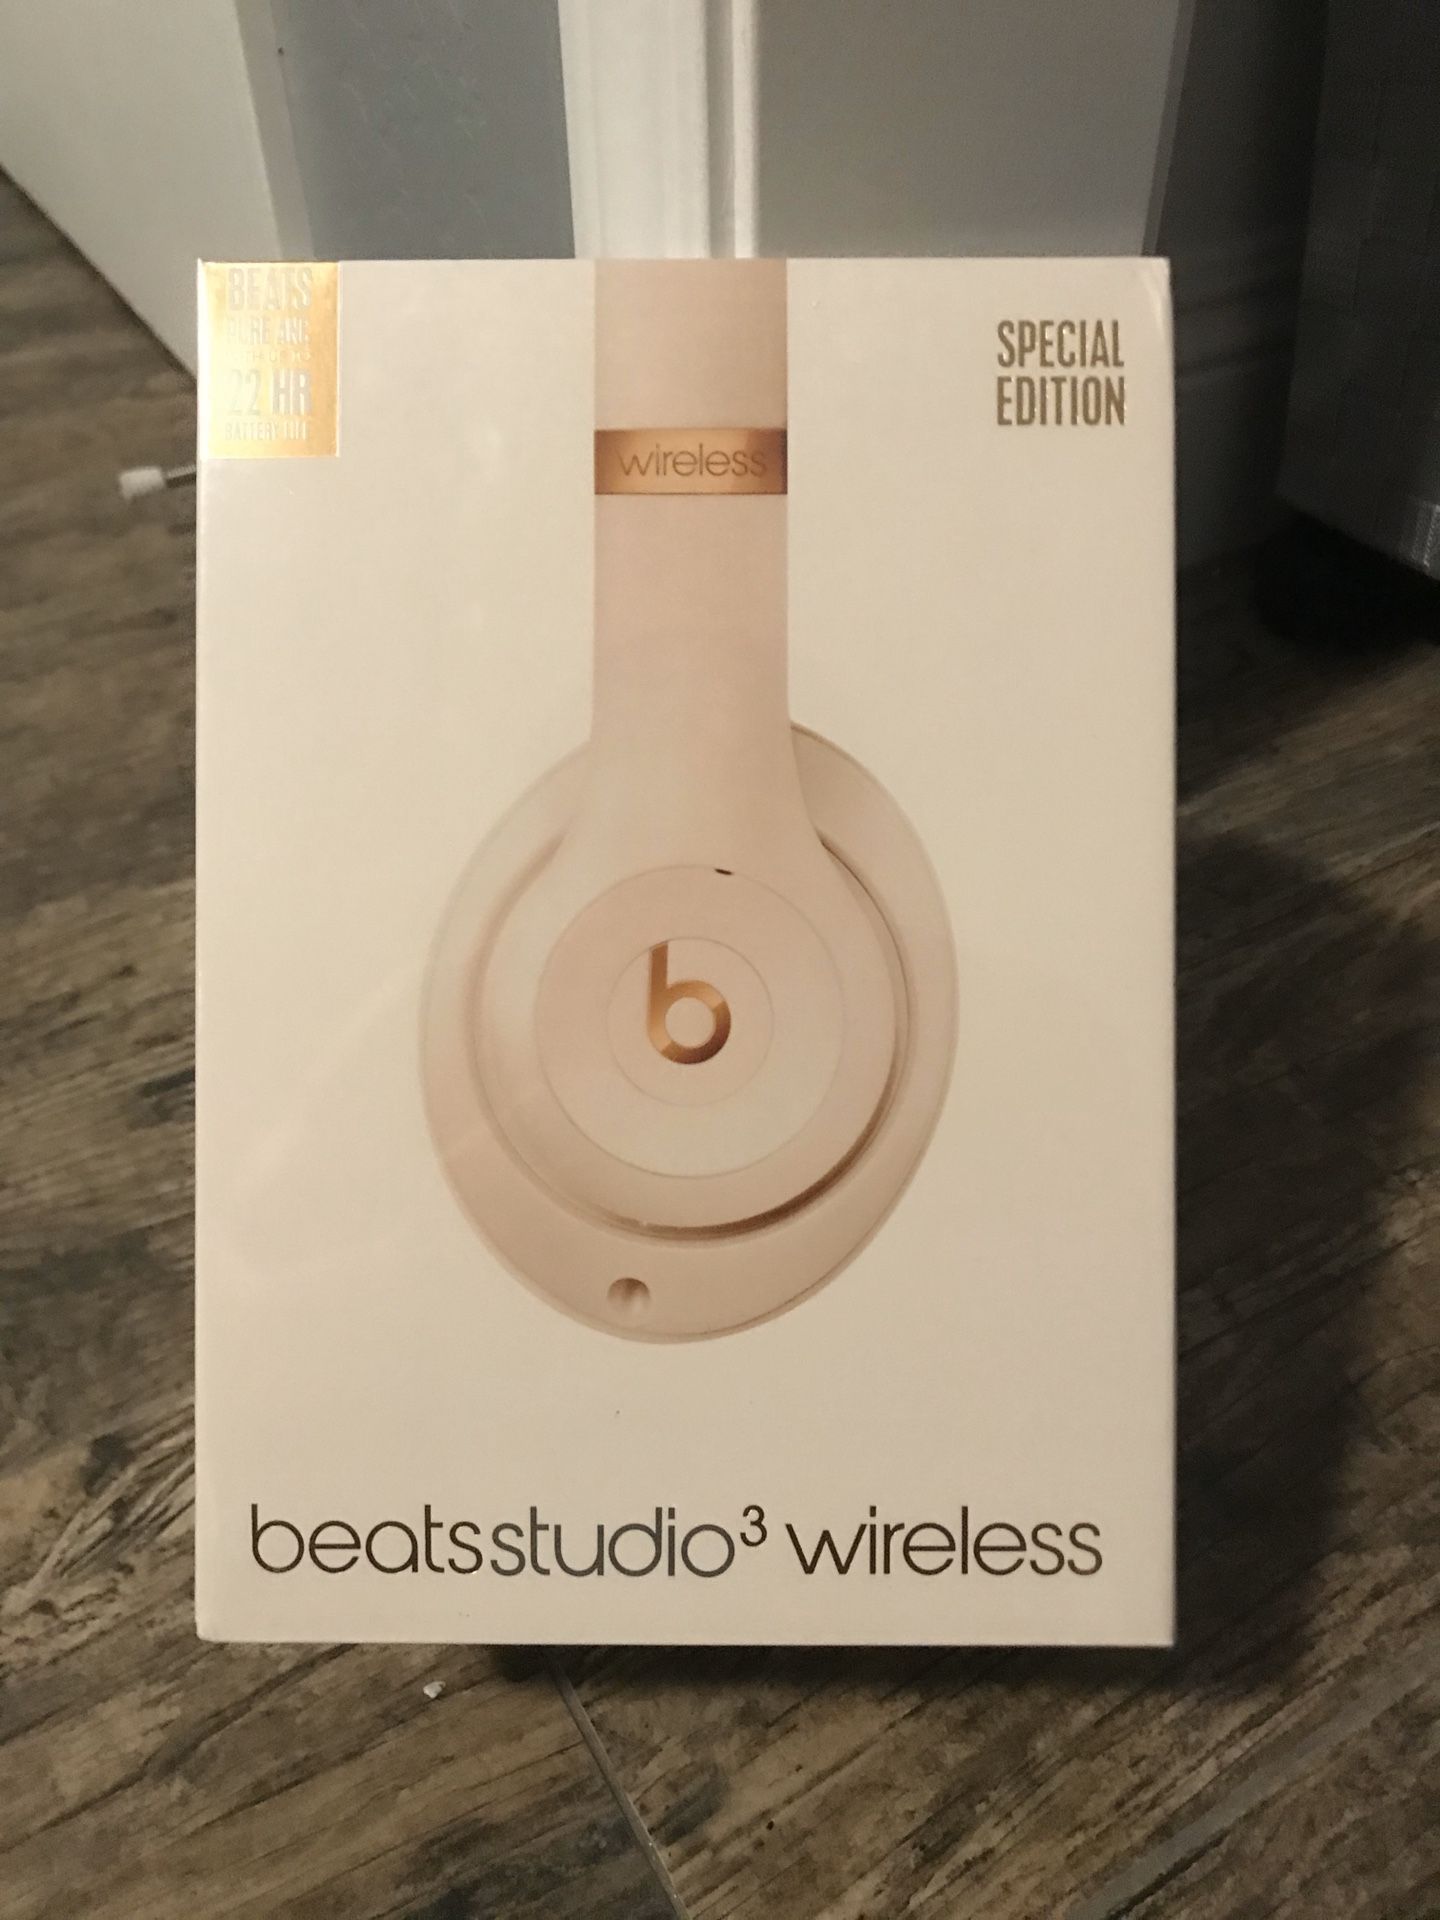 Beats studio3 wireless headphones